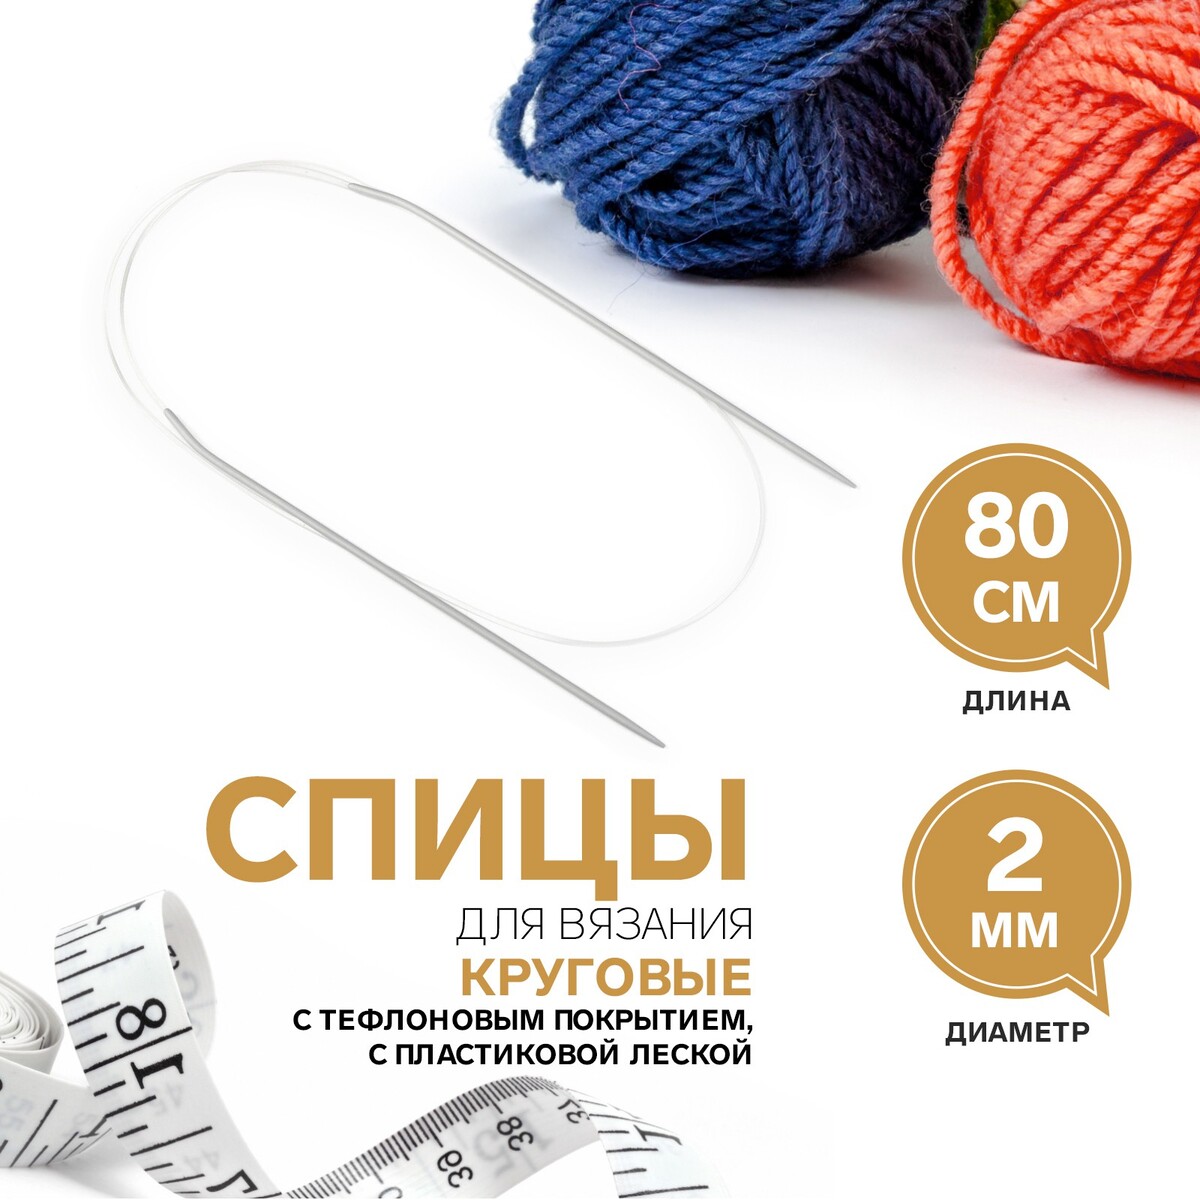 Съемные спицы и аксессуары купить в Москве, в интернет-магазине Yarn-Sale